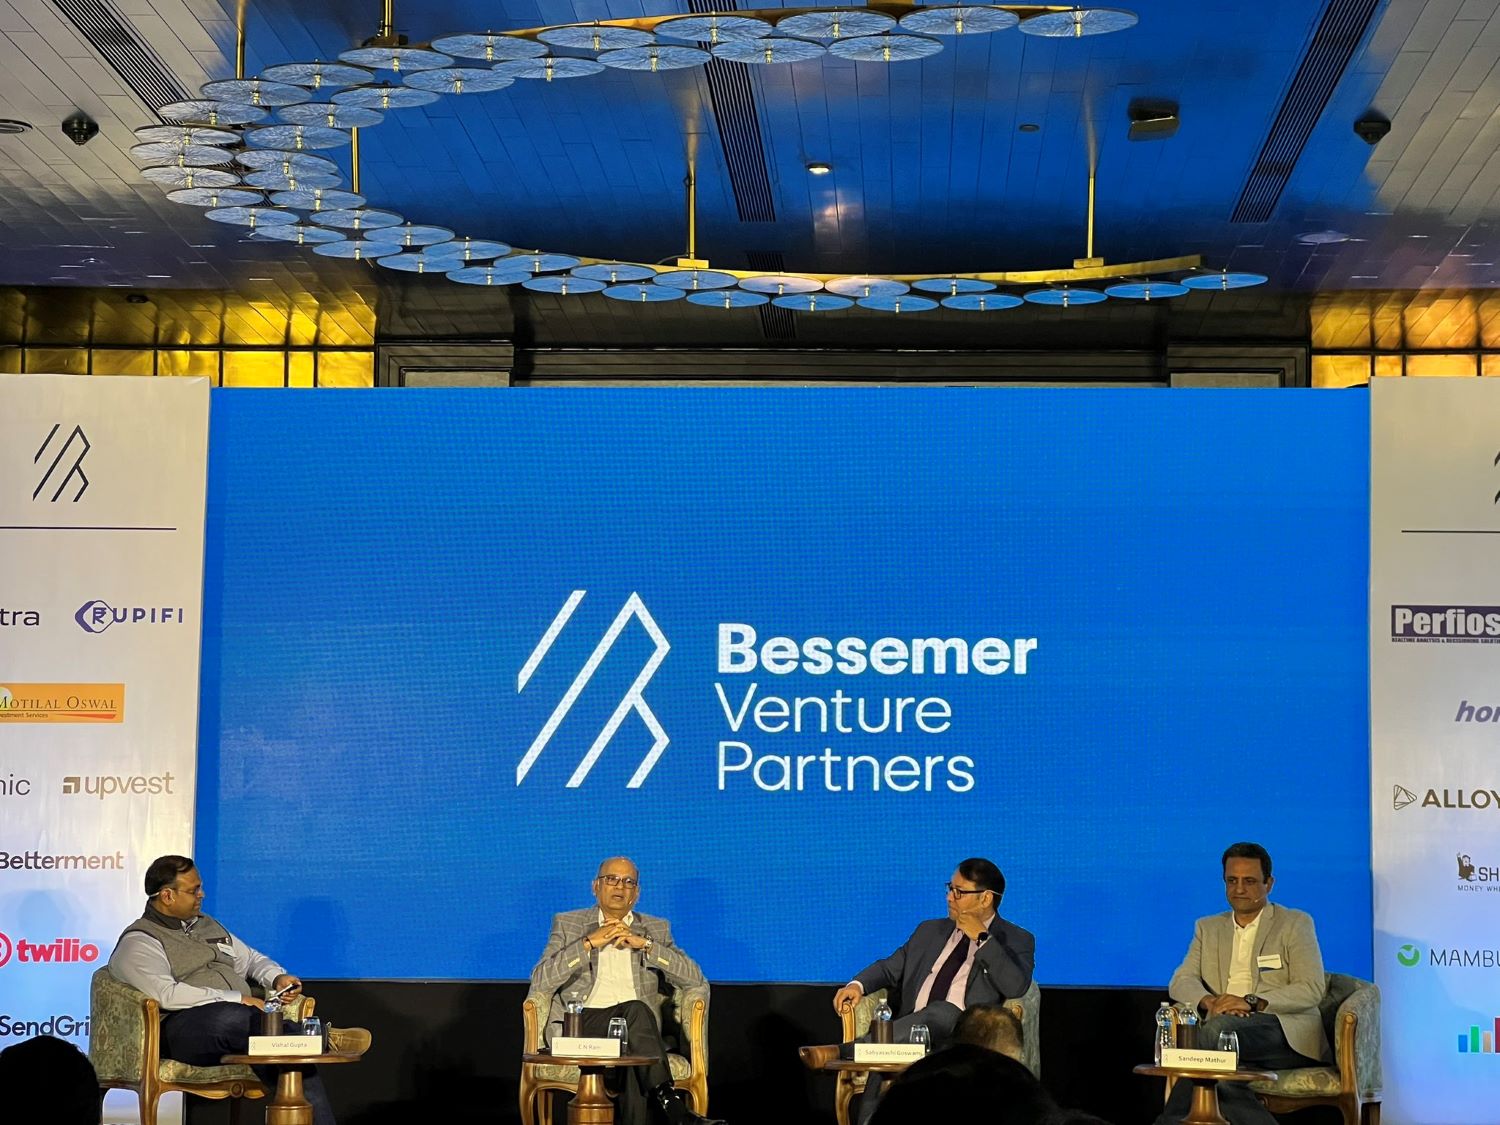 Bessemer Venture Partners at a seminar